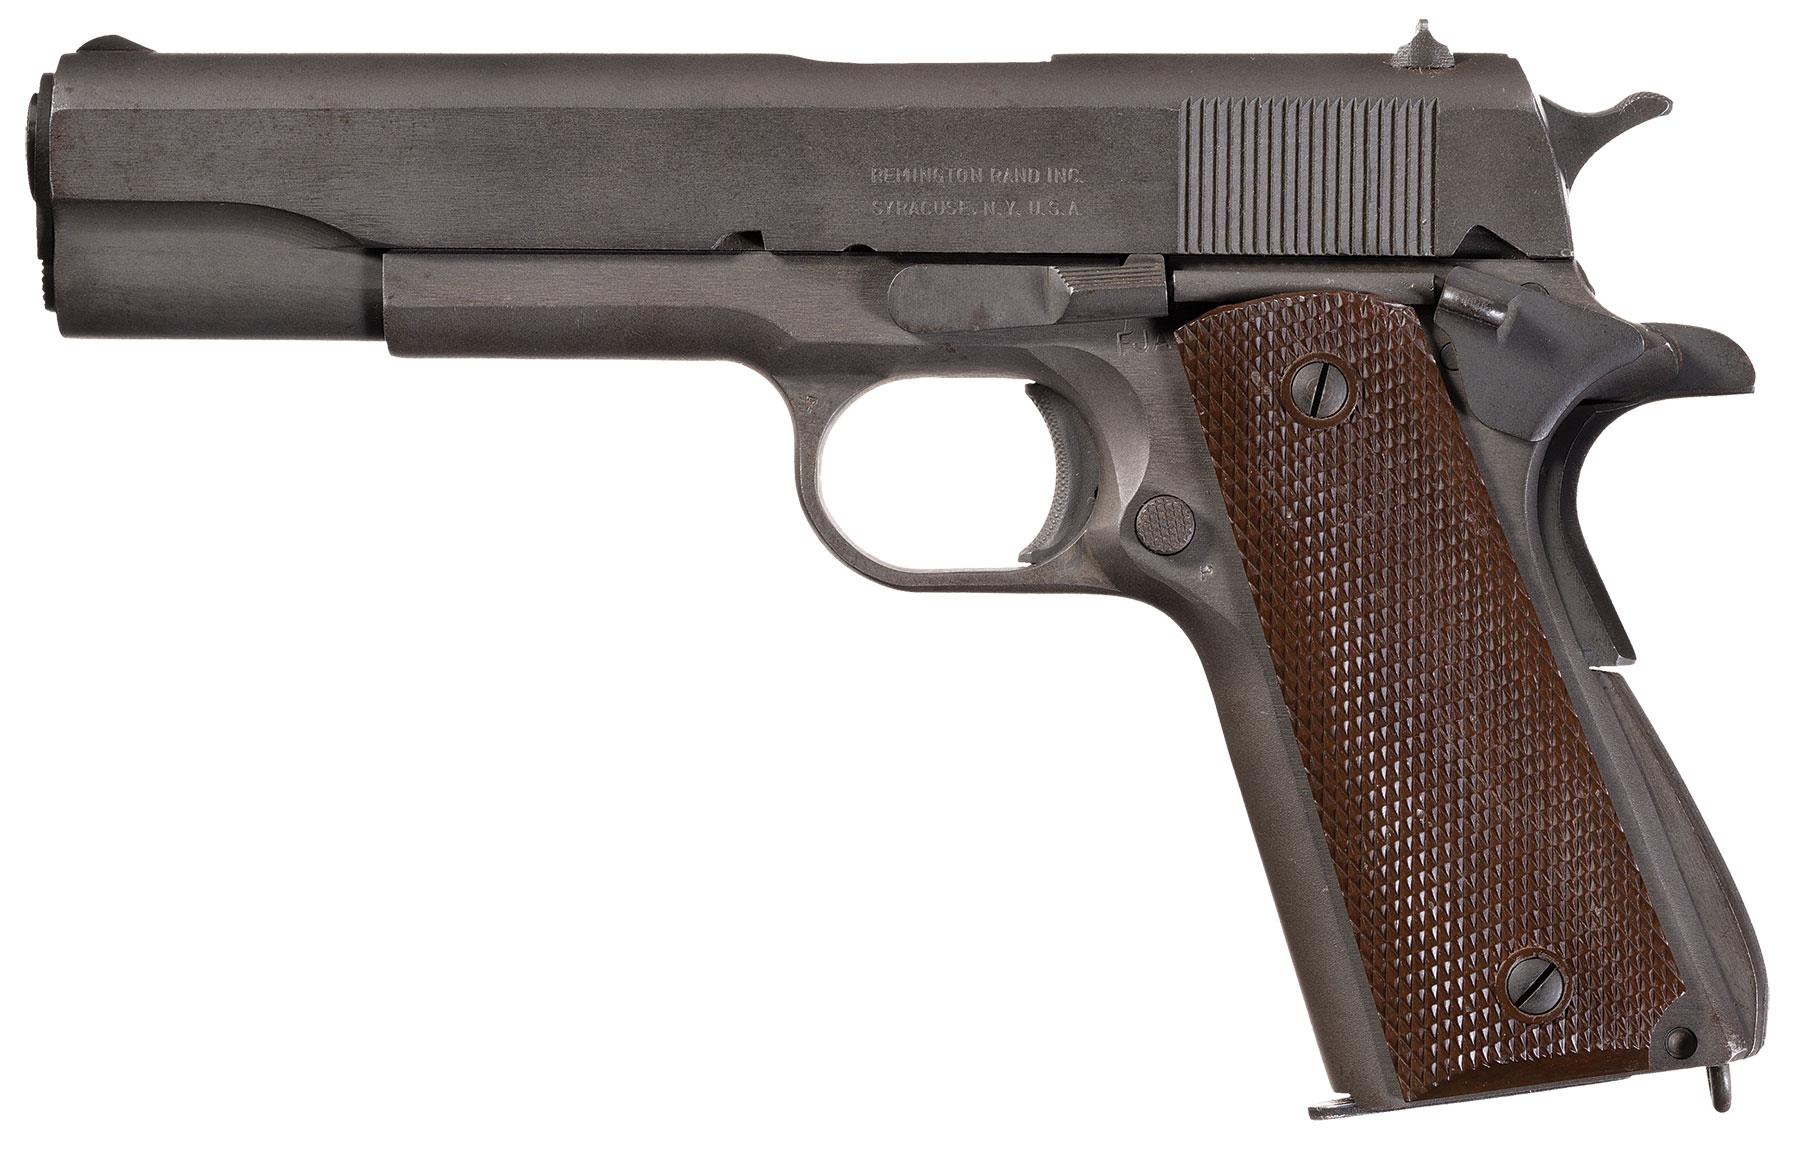 1944 remington rand 1911a1 grip emblem